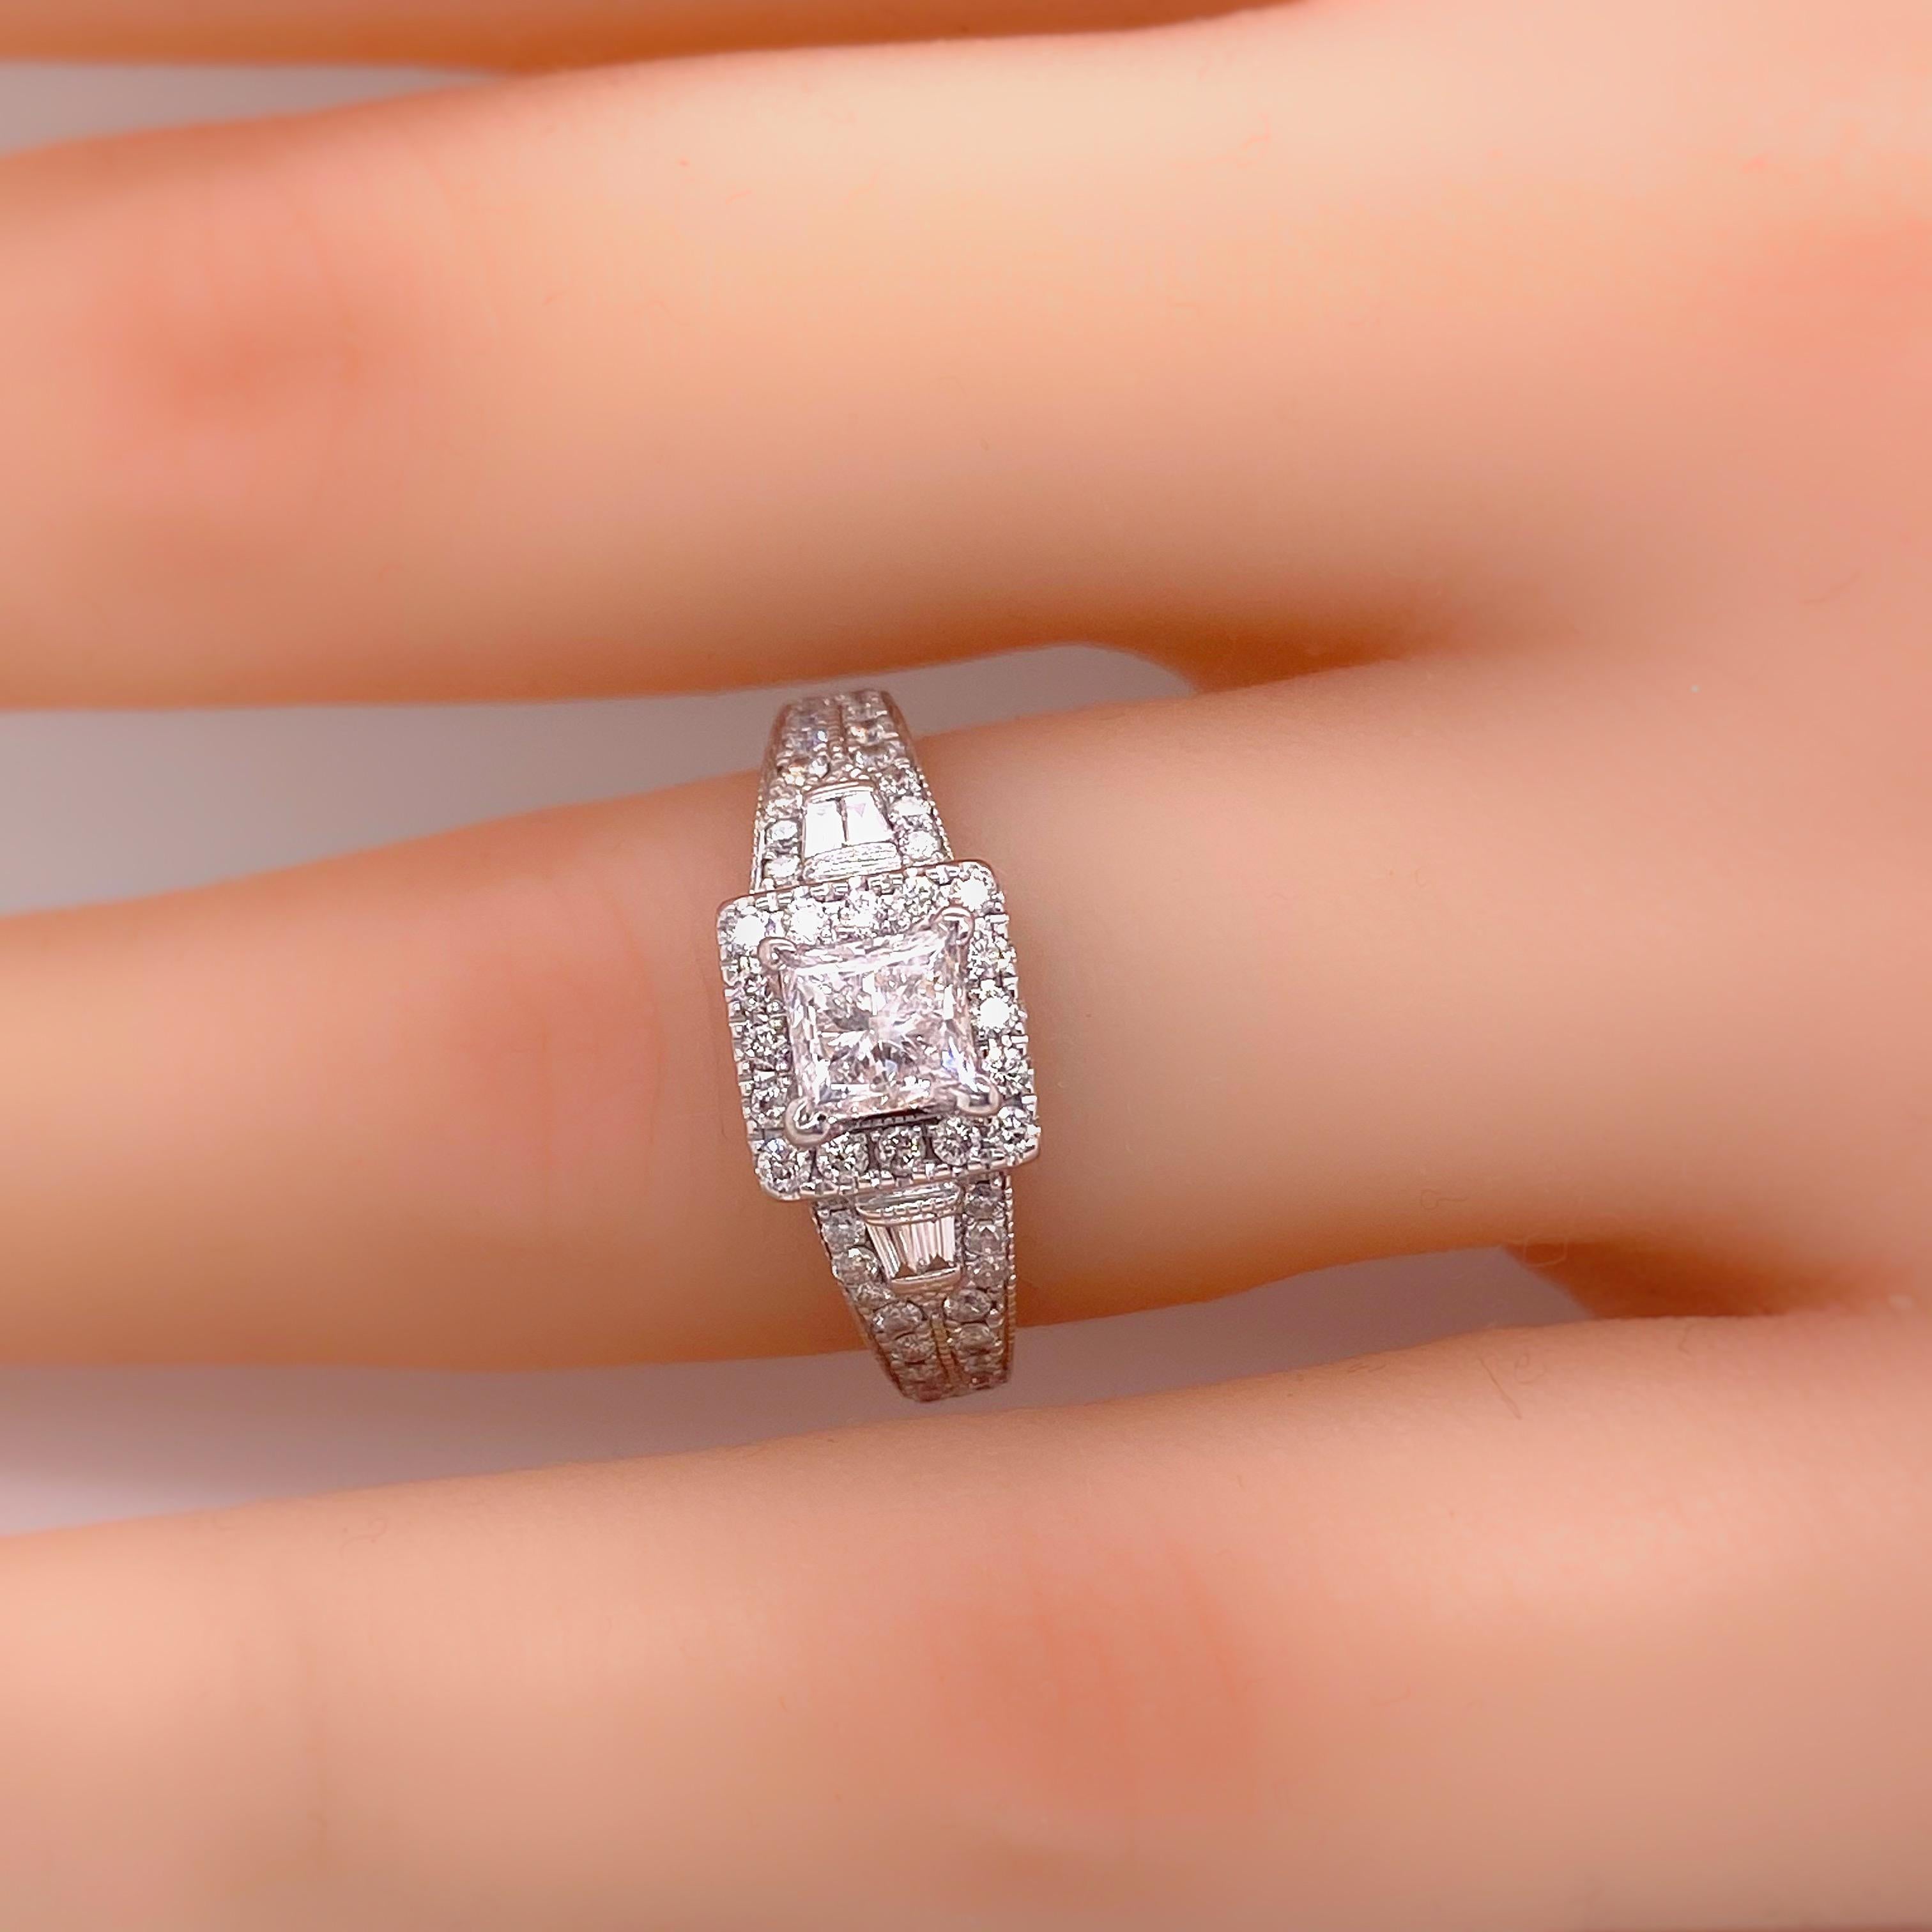 Neil Lane Princess Diamond 1.50 Carat Engagement Ring in 14 Karat White Gold For Sale 2